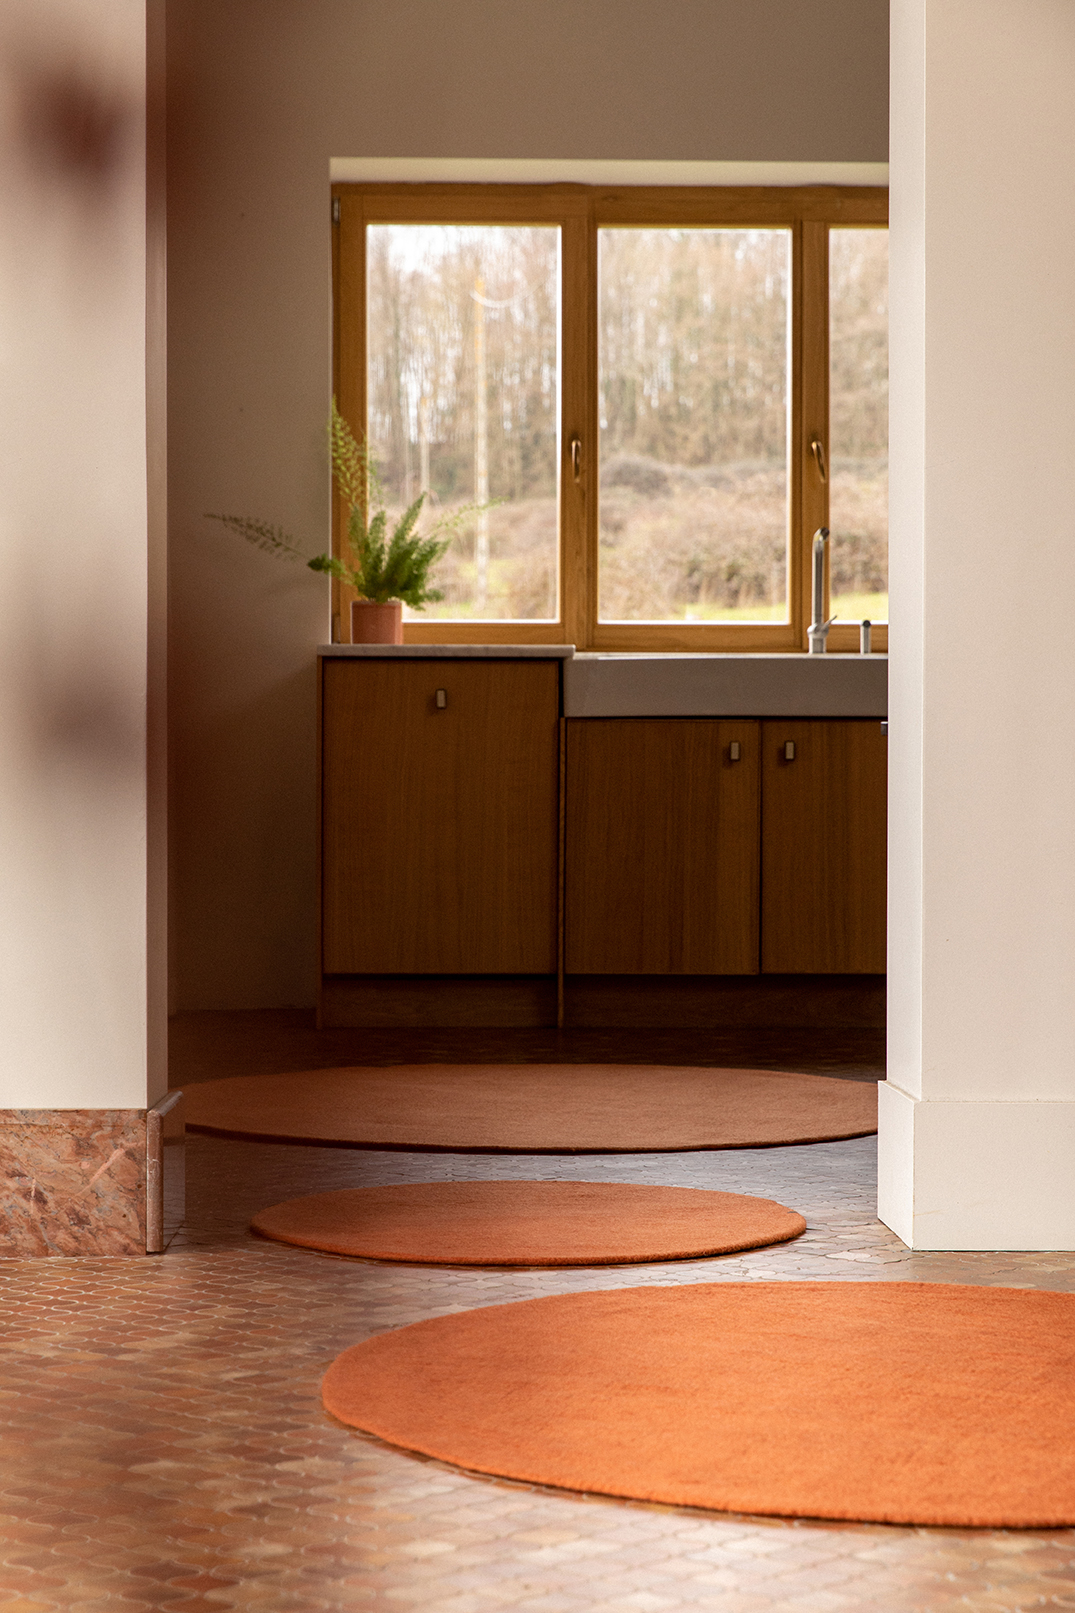 Trio de petits tapis ronds terracotta pour réchauffer l'atmosphère dans un couloir